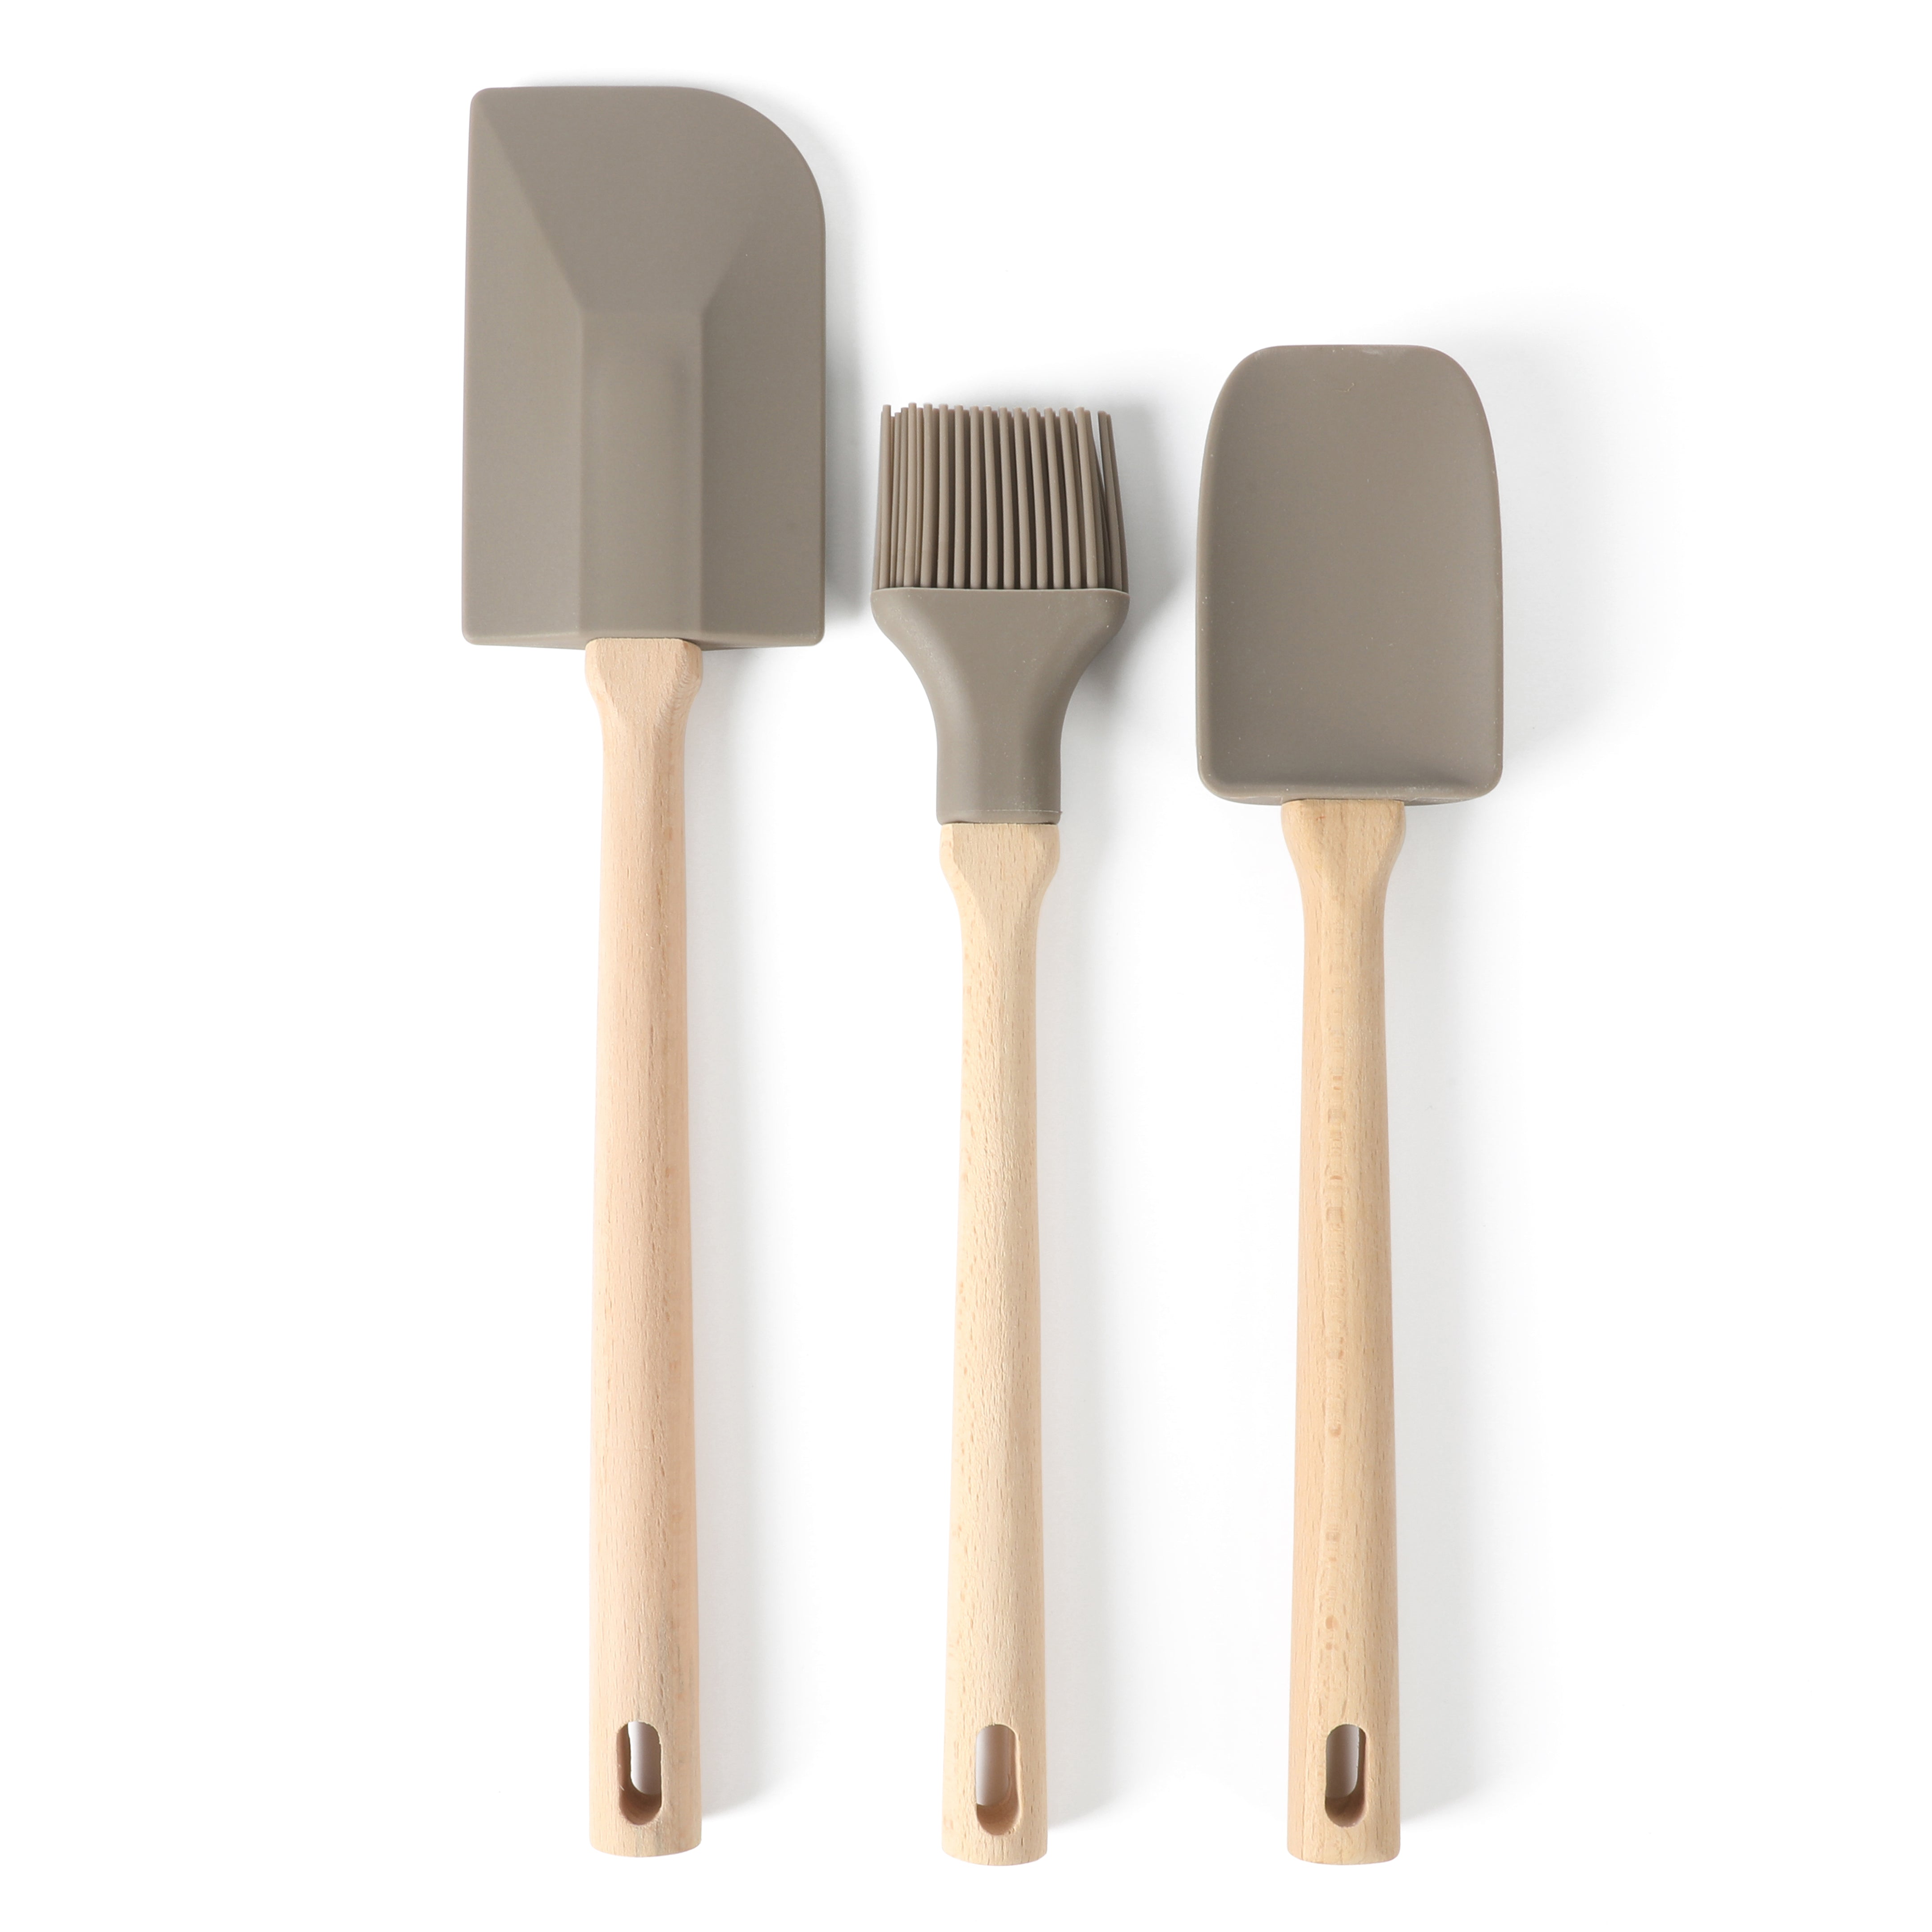 Martha Stewart 9-Piece Beech Wood Kitchen Gadgets and Tool Set